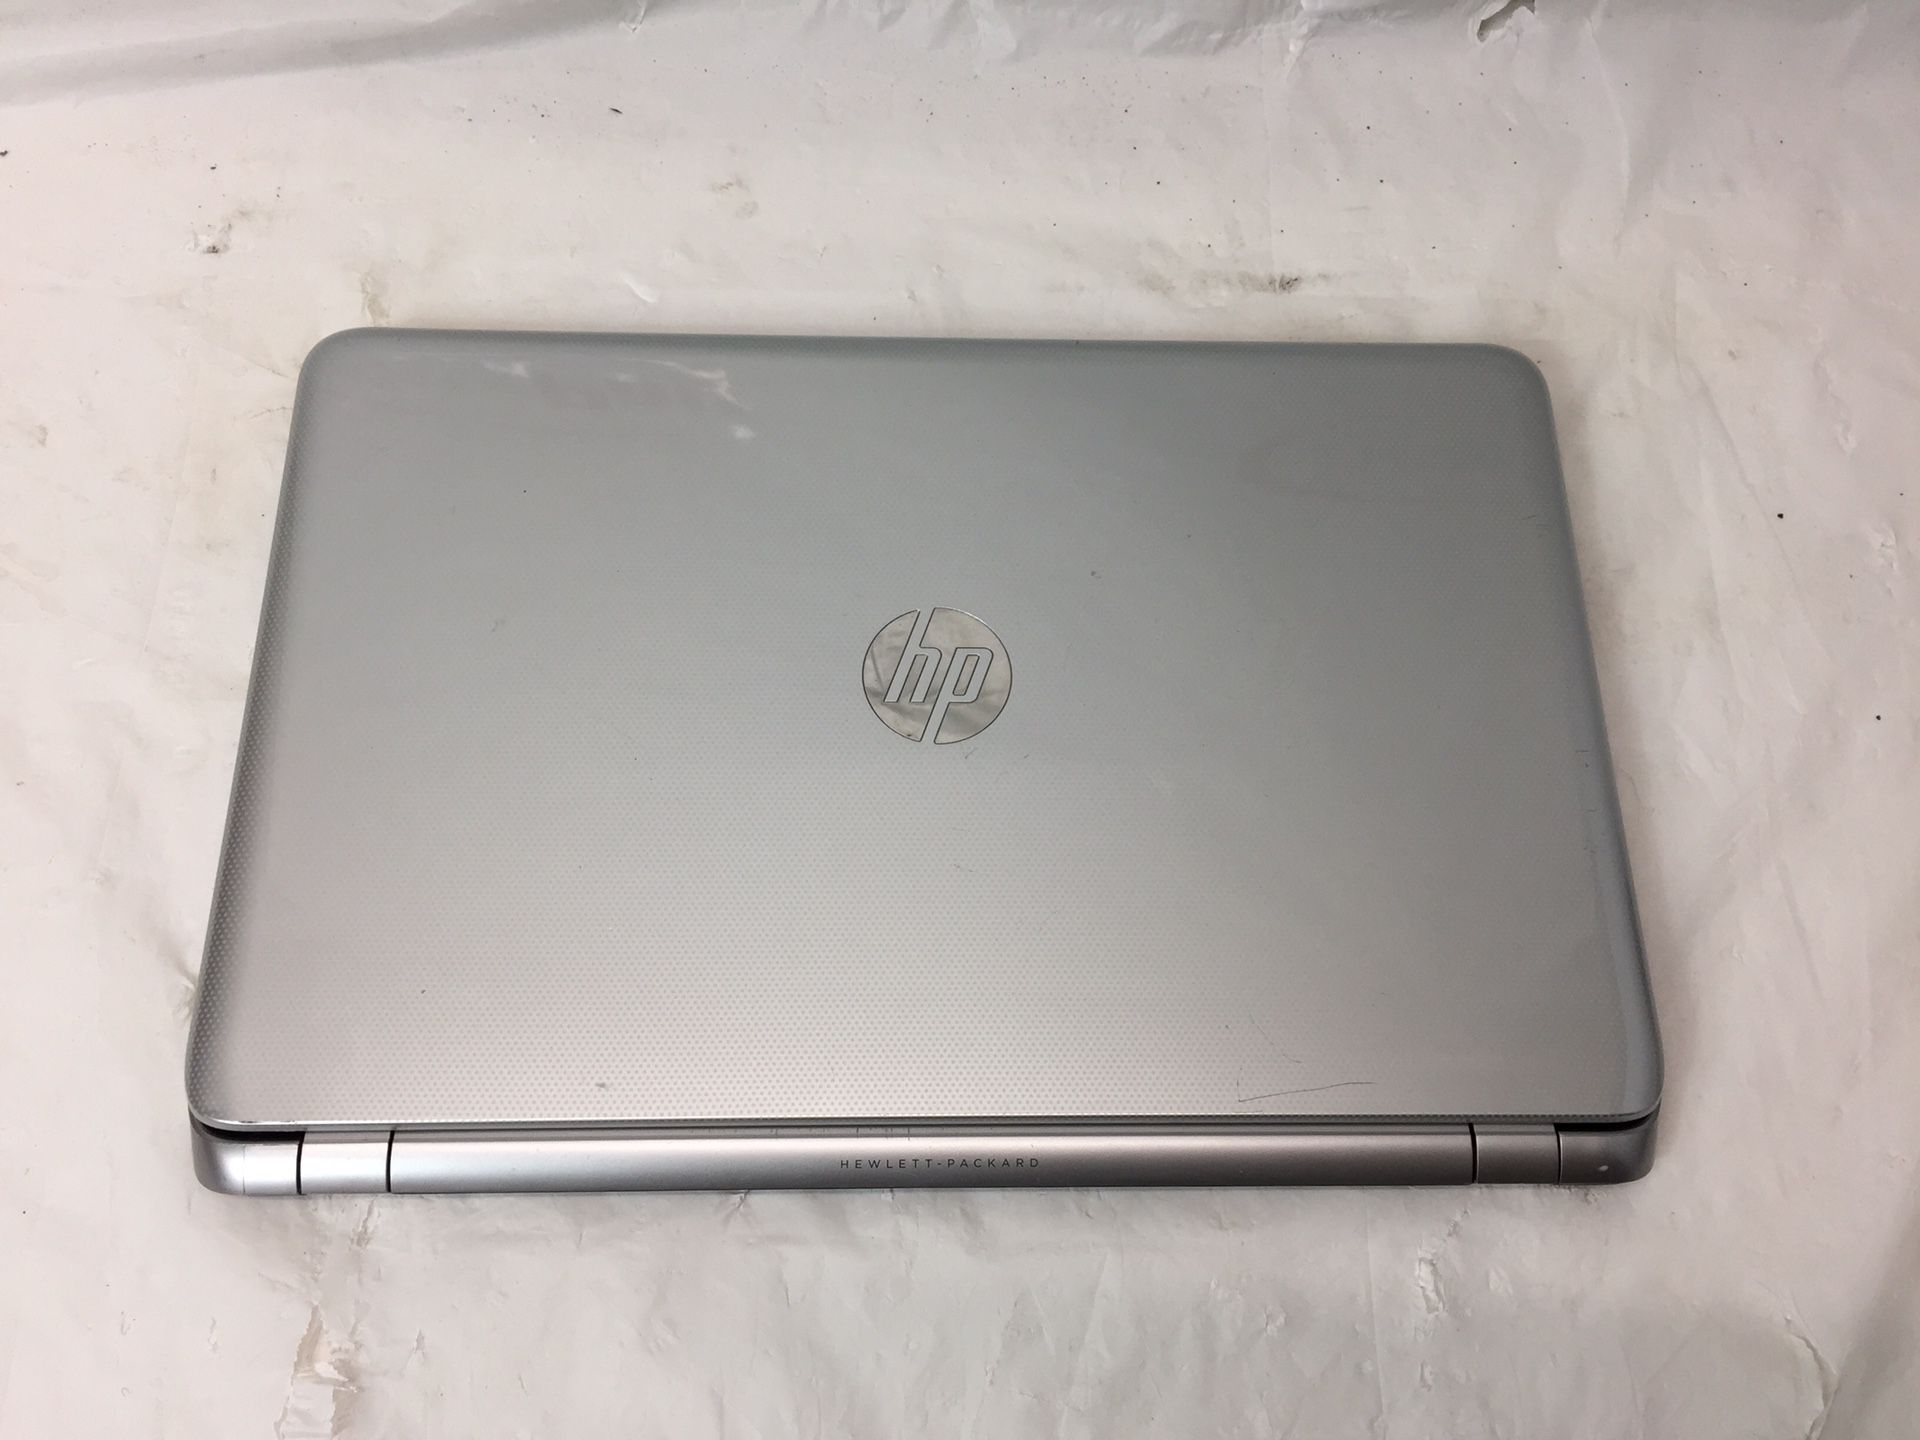 HP Laptop - Please Read Description For Details (MXP013712)